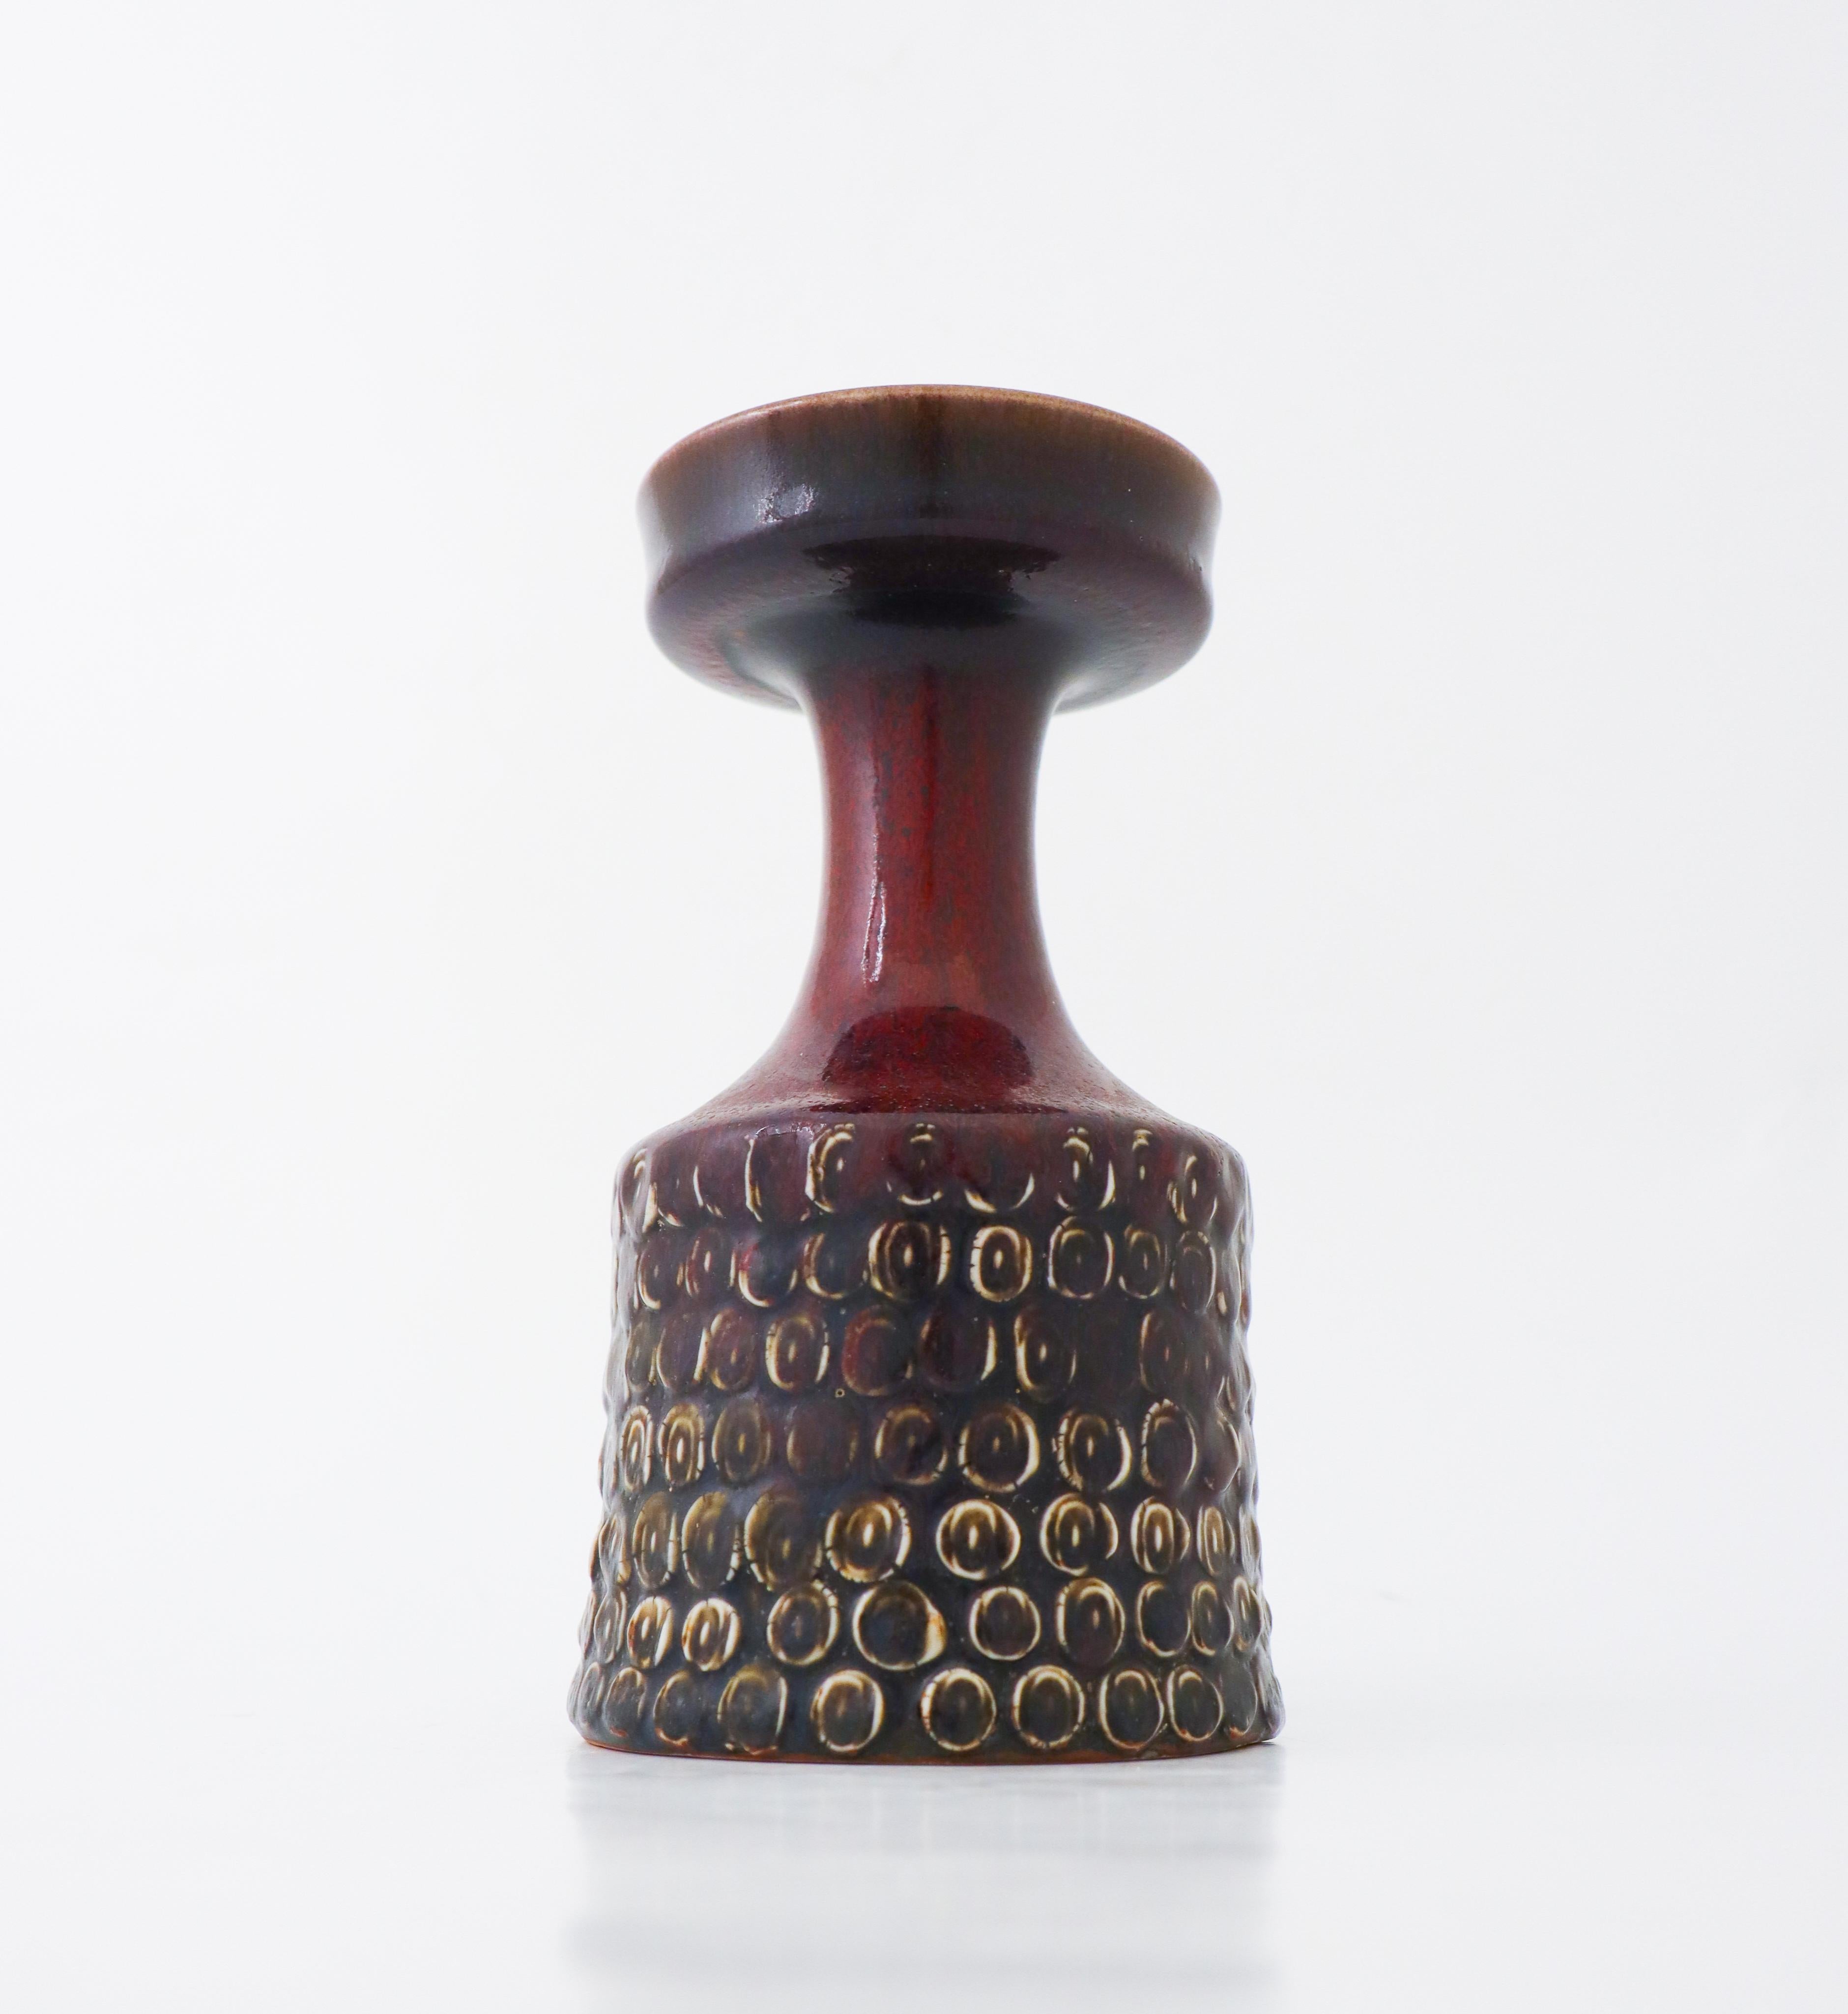 Eine Vase, entworfen von Stig Lindberg in Gustavsbergs Studio in Stockholm. Es hat eine ochsenblutrote glänzende Farbe und ist in ausgezeichnetem Zustand und mit der klassischen Studio Hand und Stig unten markiert

Stig Lindberg ist einer der